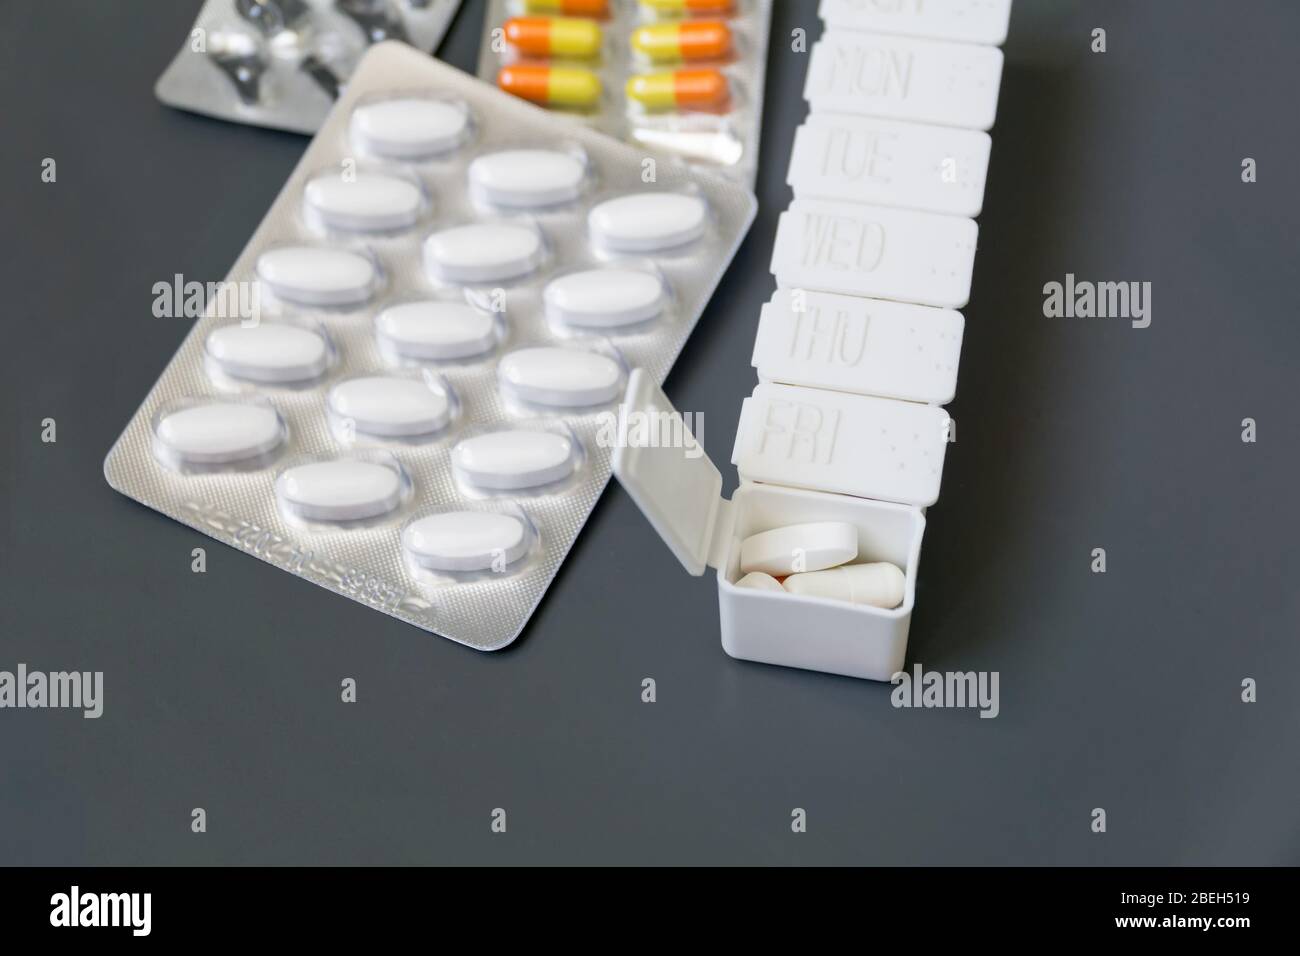 Pastillas, tabletas y cápsulas de medicina de diferentes colores en la caja de pastillas sobre fondo gris, enfoque selectivo. Atención de salud. Foto de stock